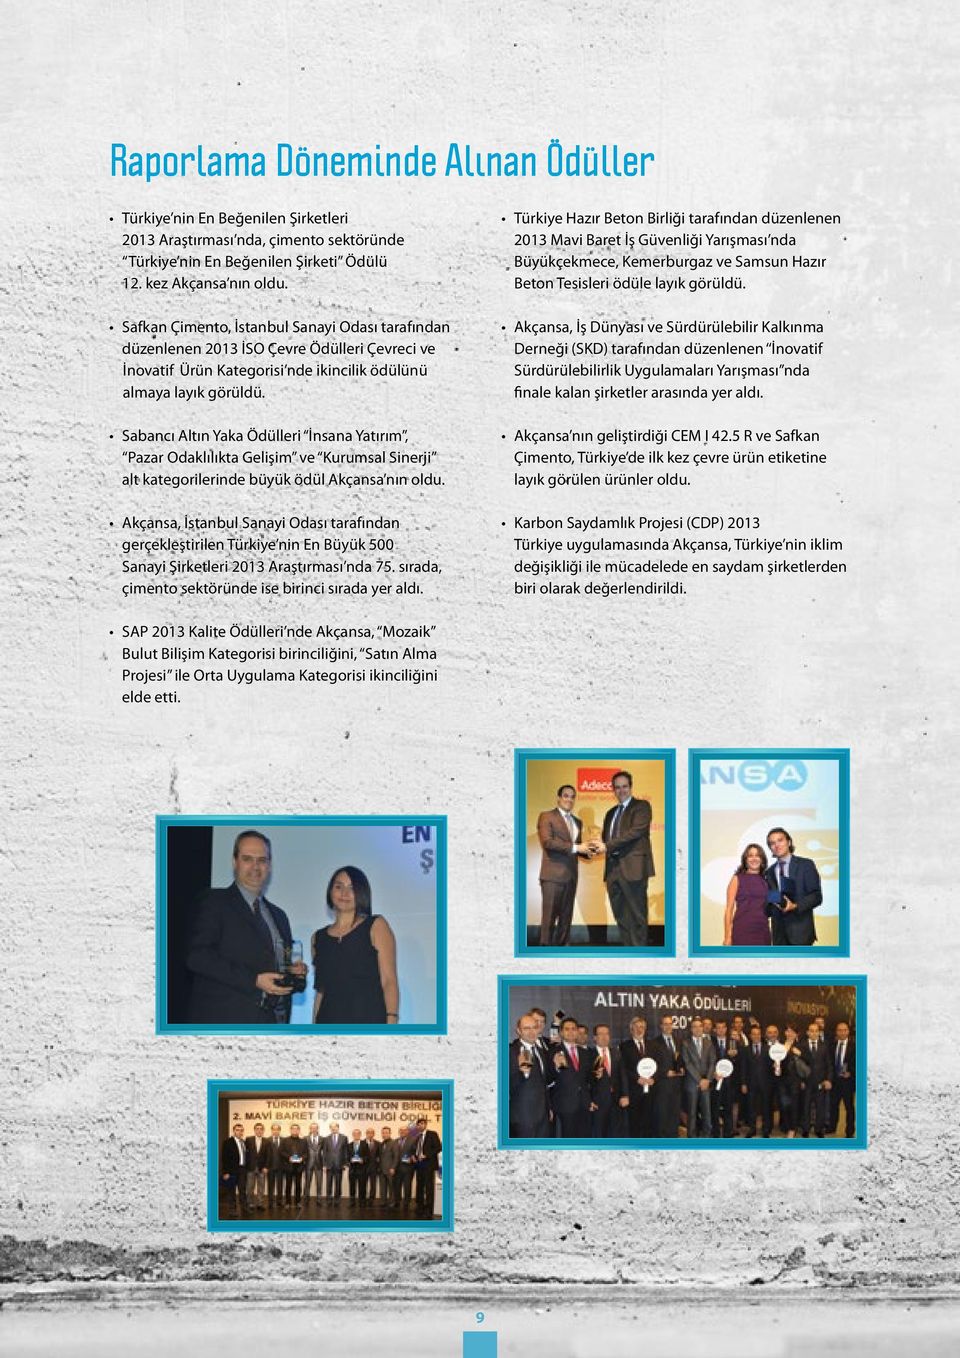 Sabancı Altın Yaka Ödülleri İnsana Yatırım, Pazar Odaklılıkta Gelişim ve Kurumsal Sinerji alt kategorilerinde büyük ödül Akçansa nın oldu.